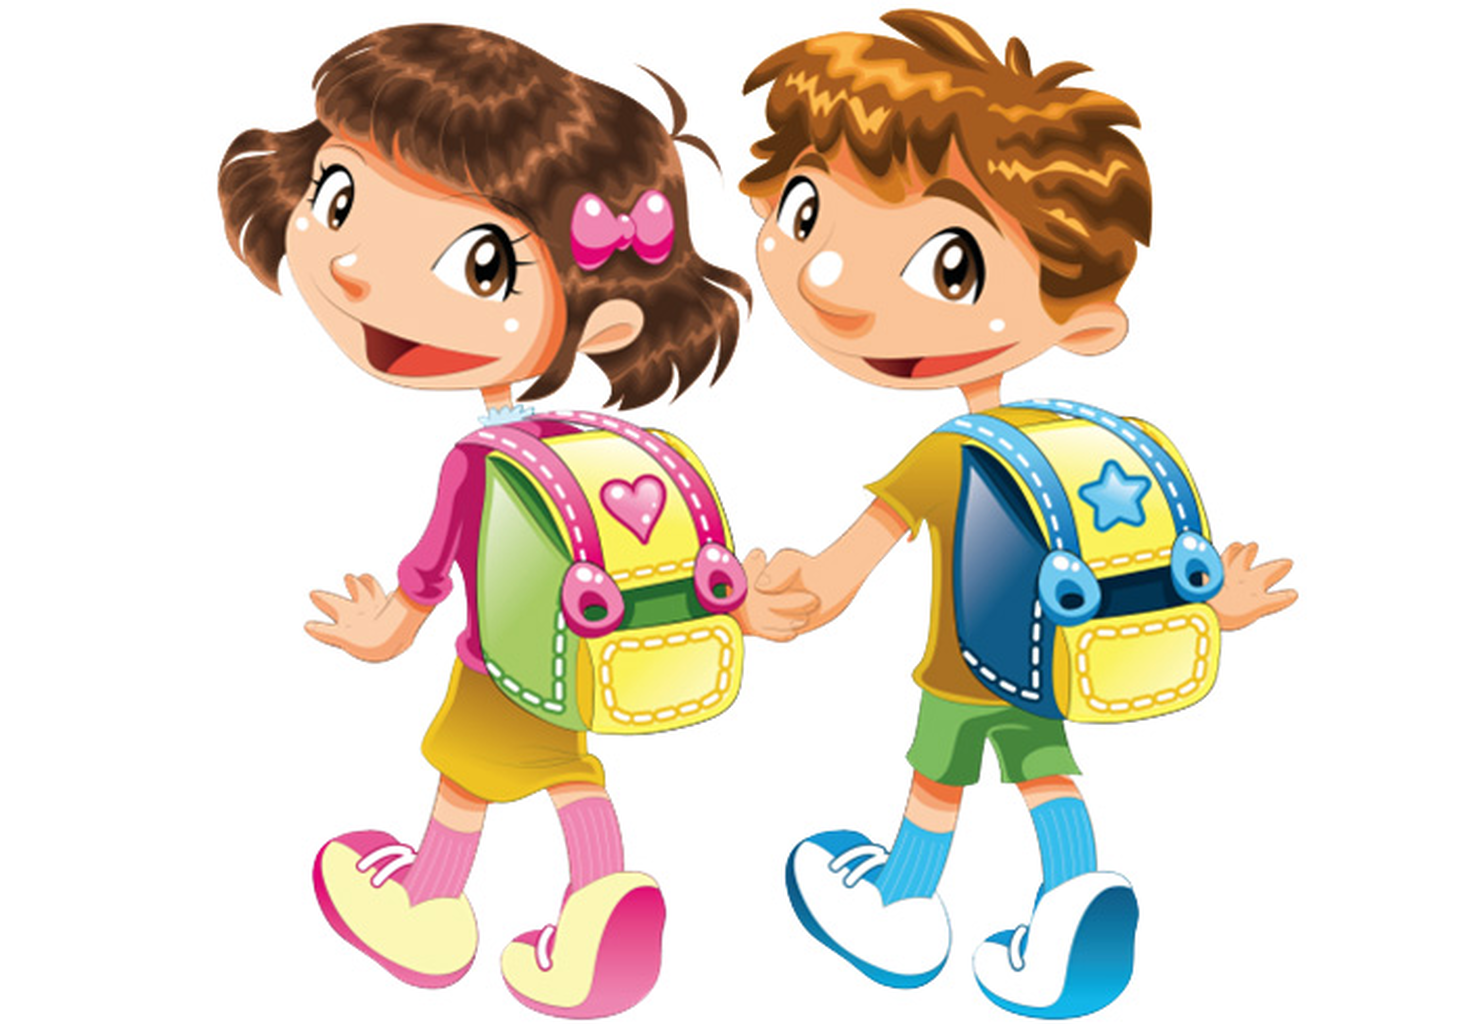 Сестра пришла из школы. Тестовая беседа с ребенком. Изображение мальчика и девочки. Ученик с рюкзаком. Школьники иллюстрация.